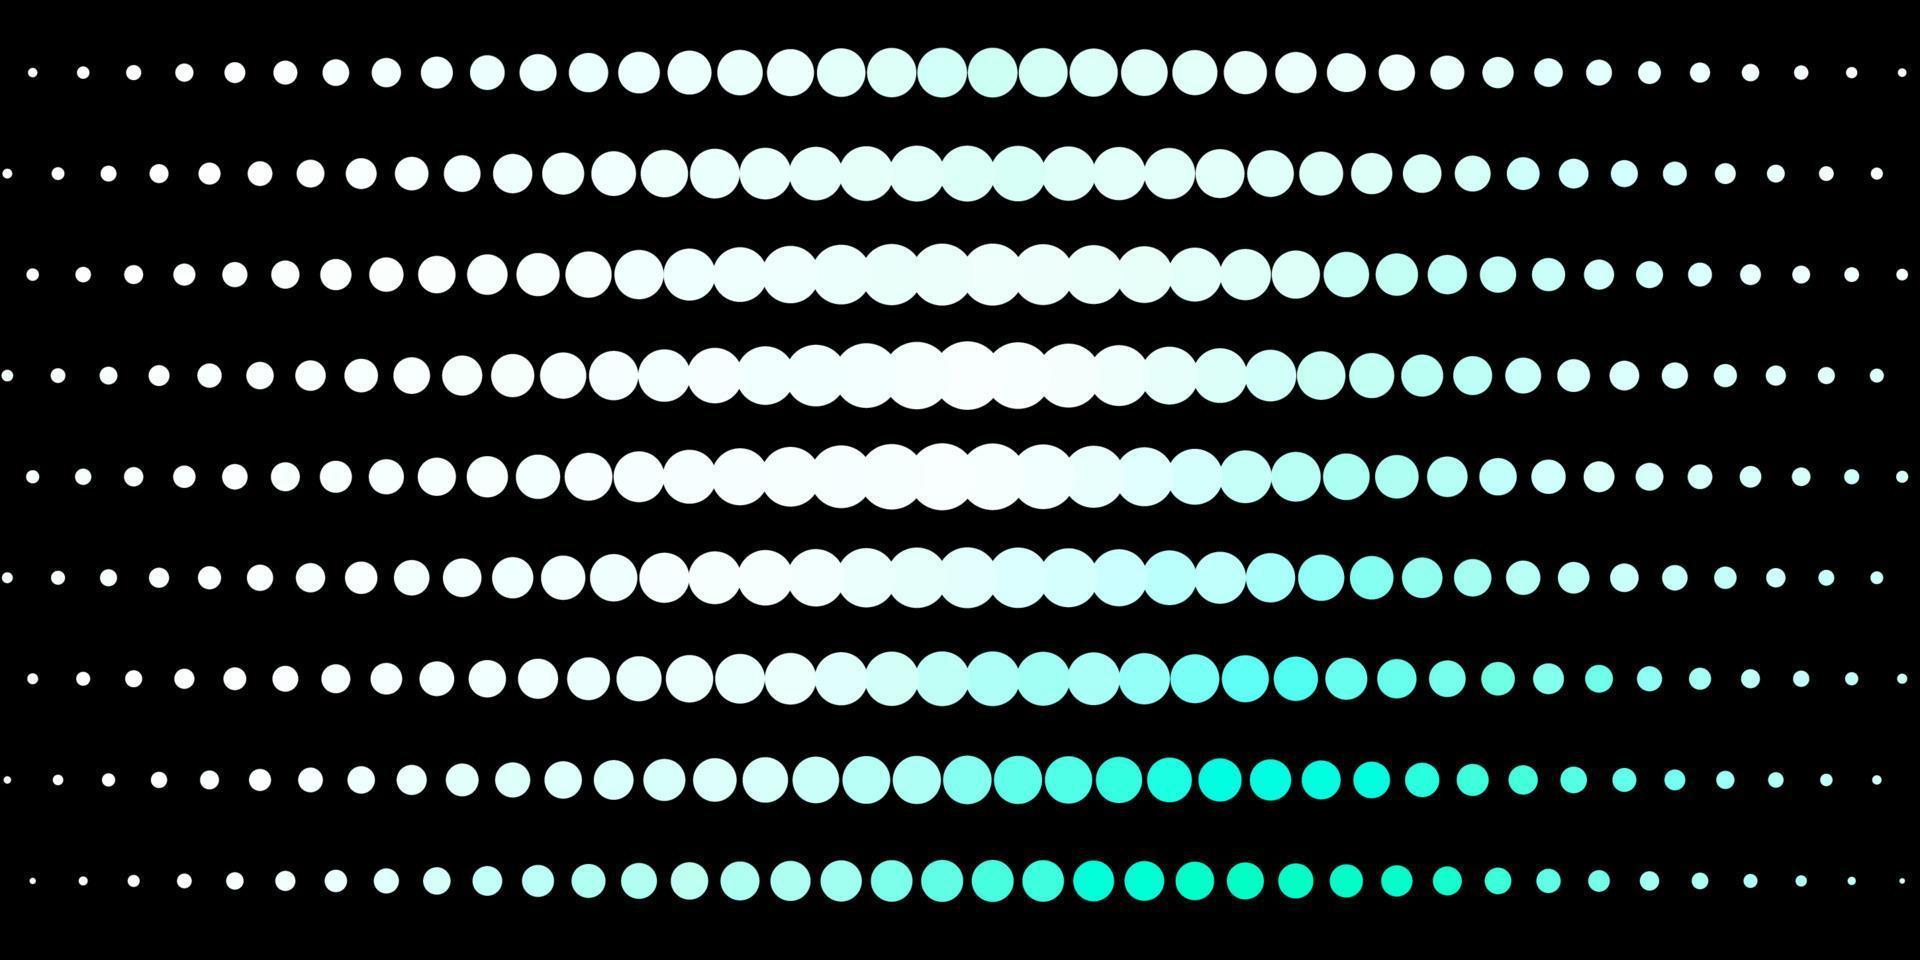 padrão de vetor verde escuro com esferas.